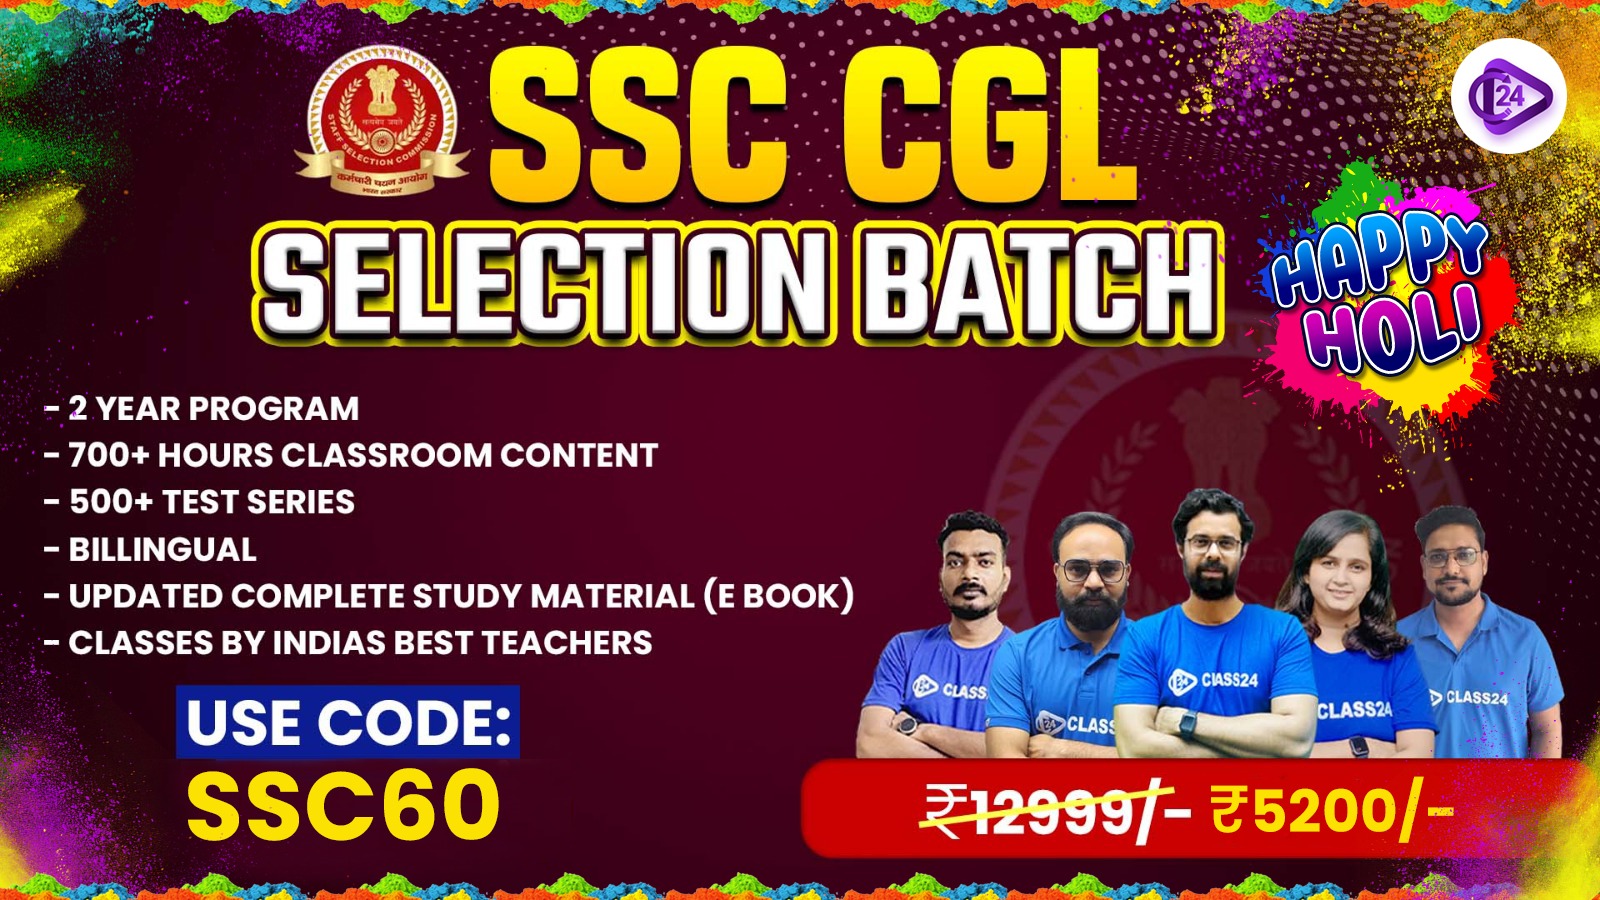 SSC CGL SELECTION BATCH